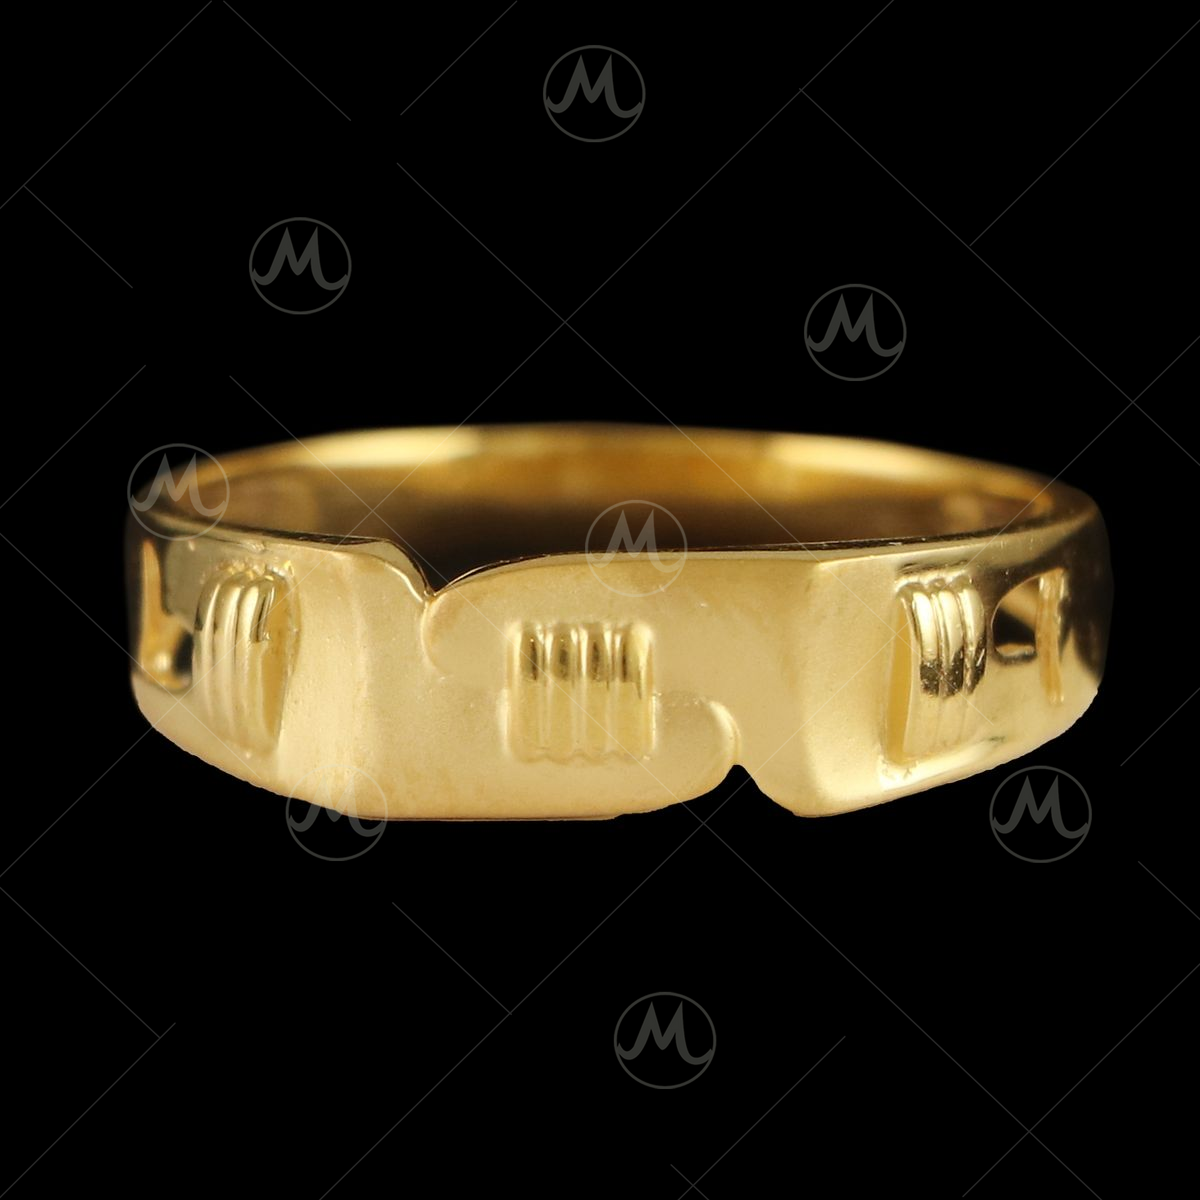 gold rings for men |gold rings | gold rings for boys |gold casting ring |  rings for men | men ring online | gold rings online |g